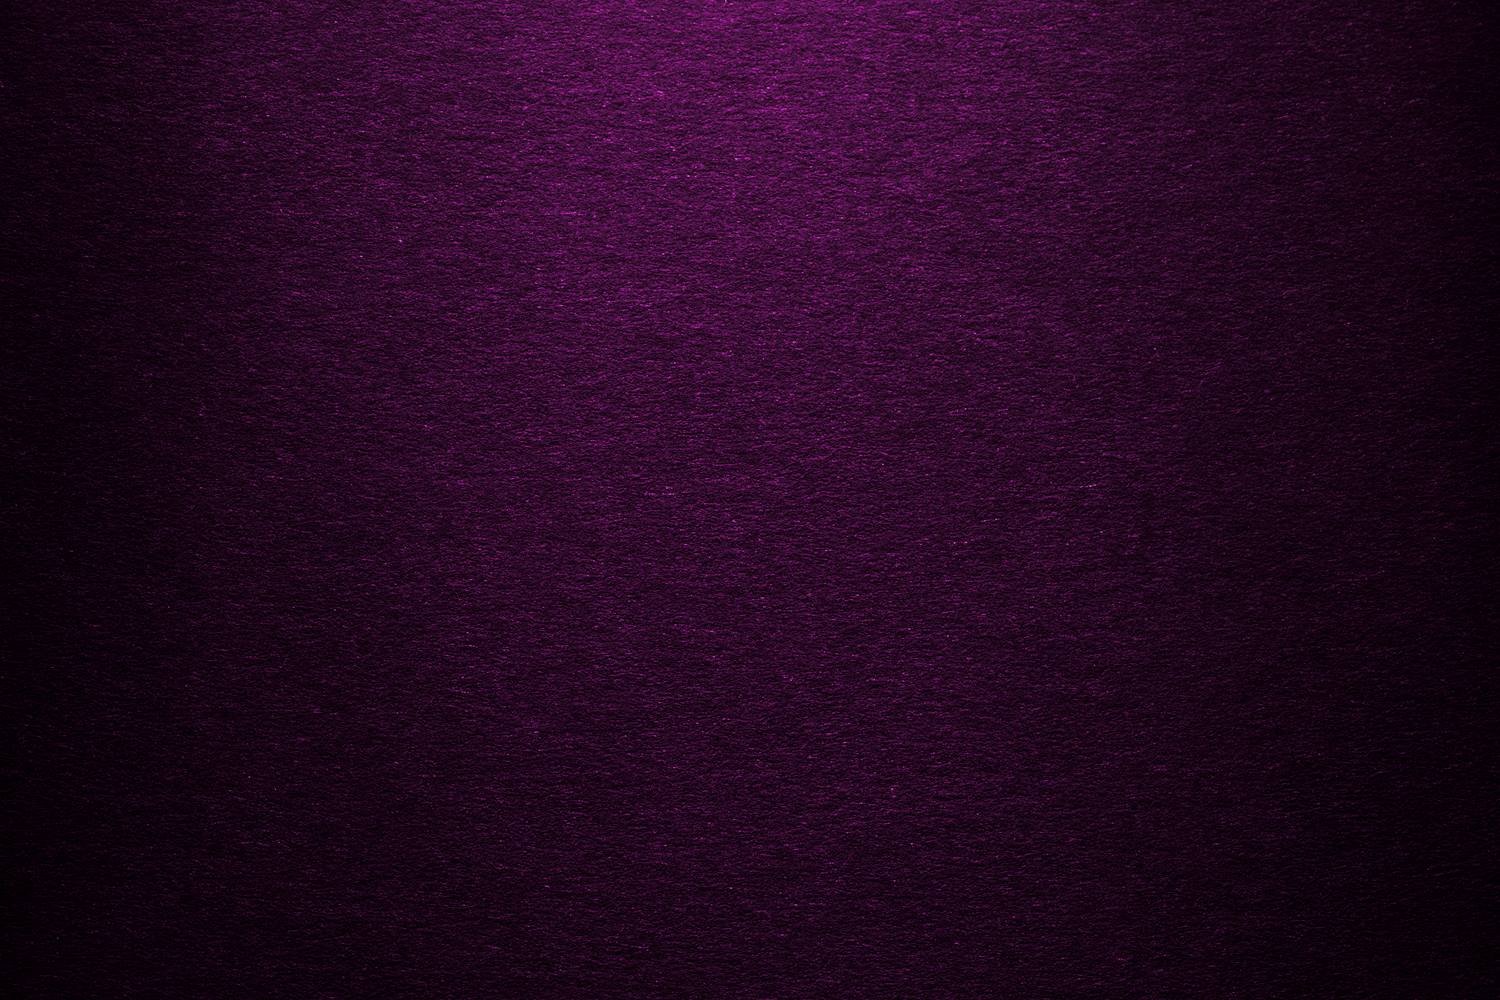 Free download Clean Dark Purple Background Texture ...